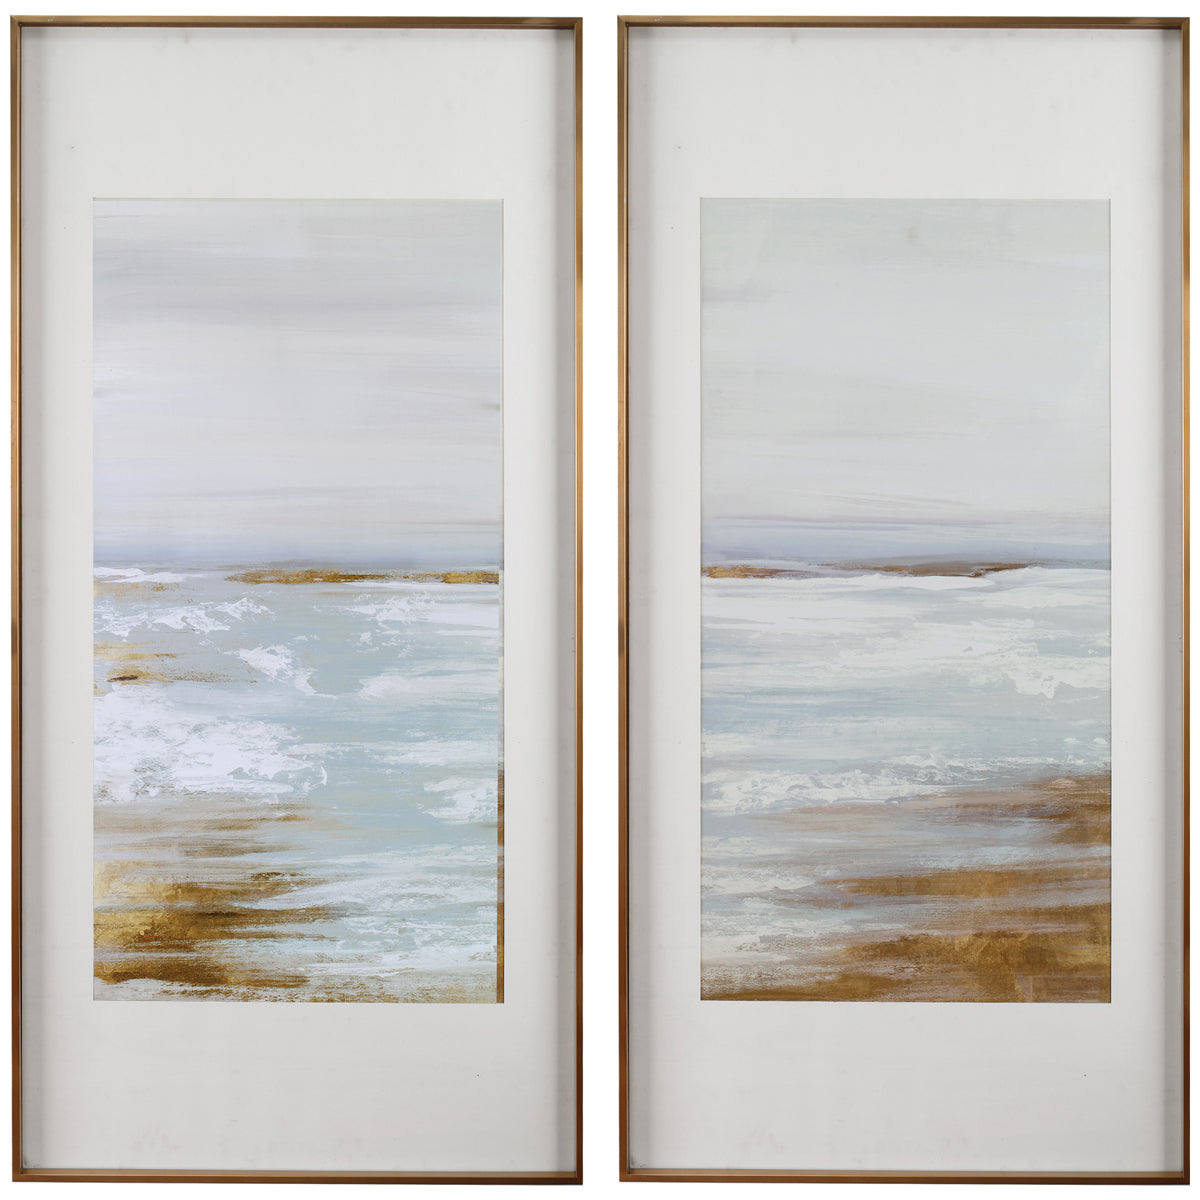 Uttermost Coastline Framed Prints, Set of 2